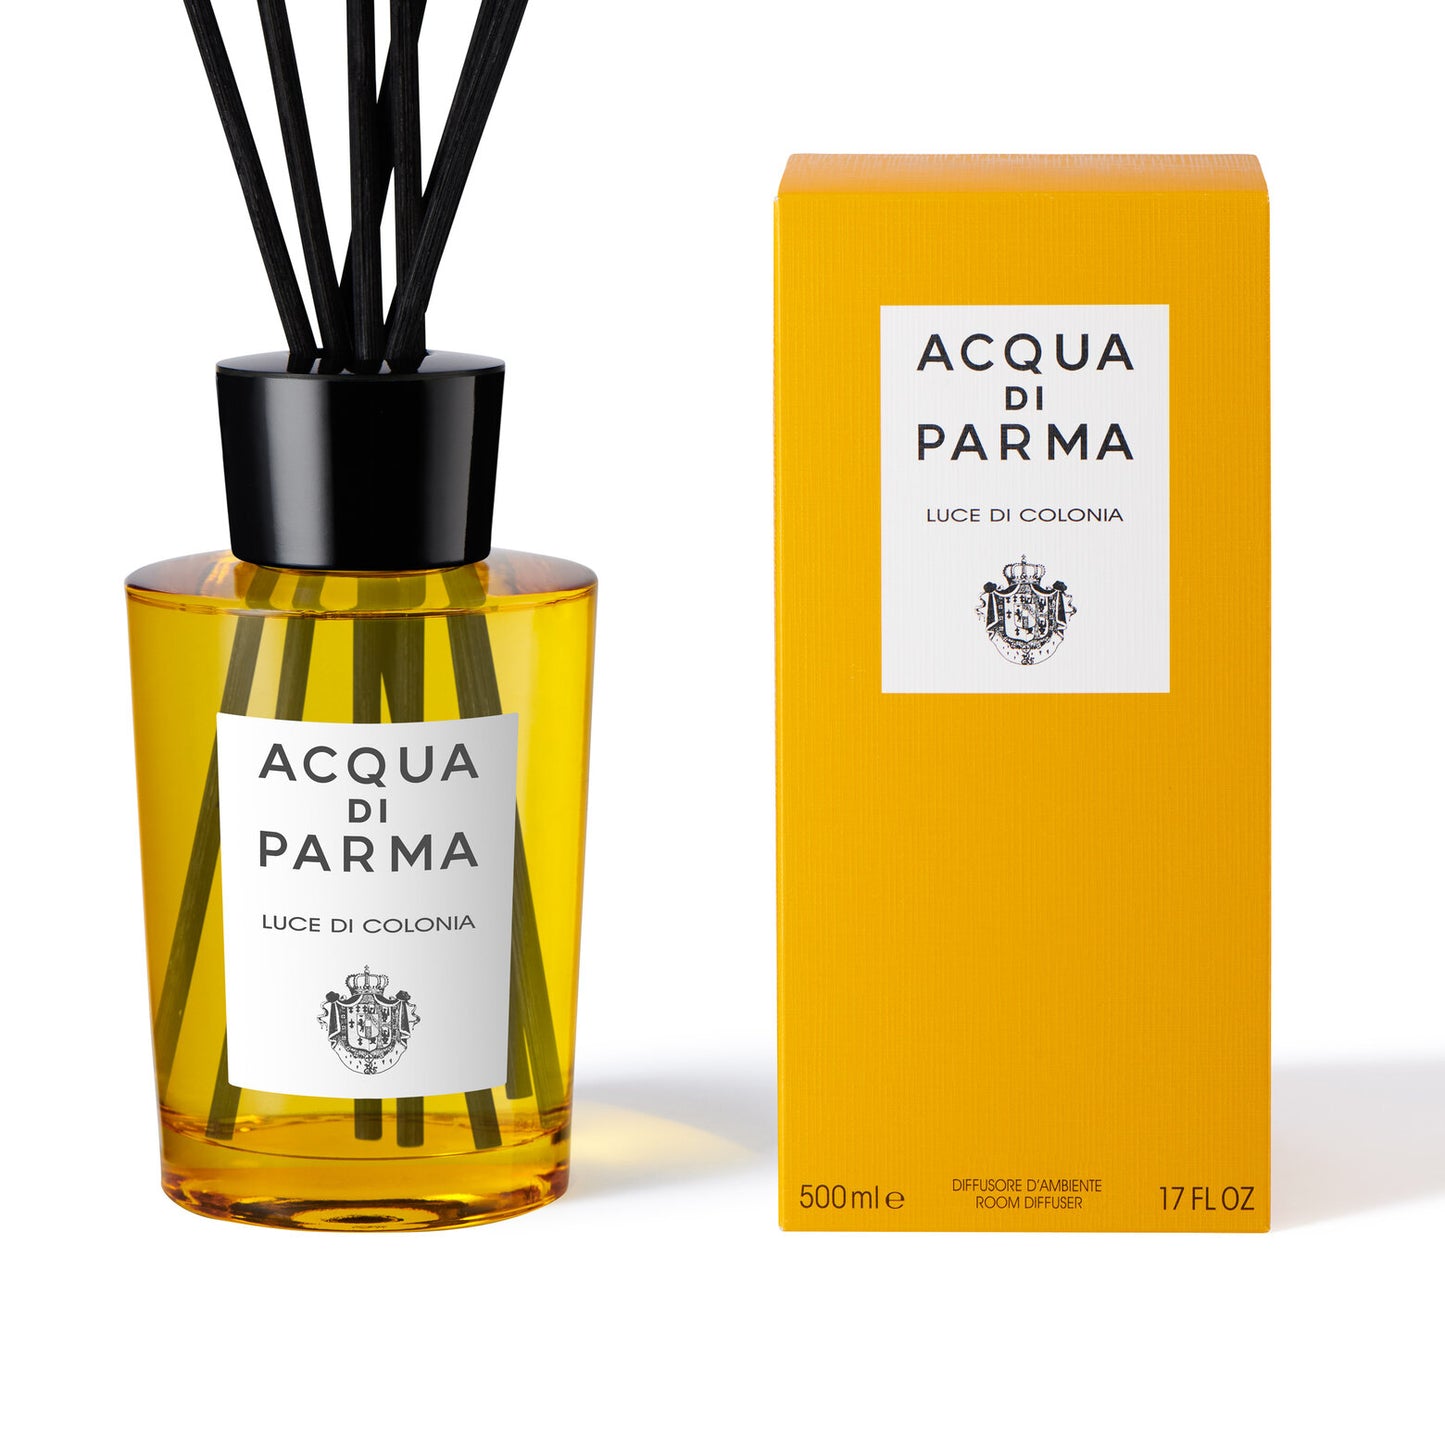 Aqua di parma - Diffuseur de parfum - Luce di colonia